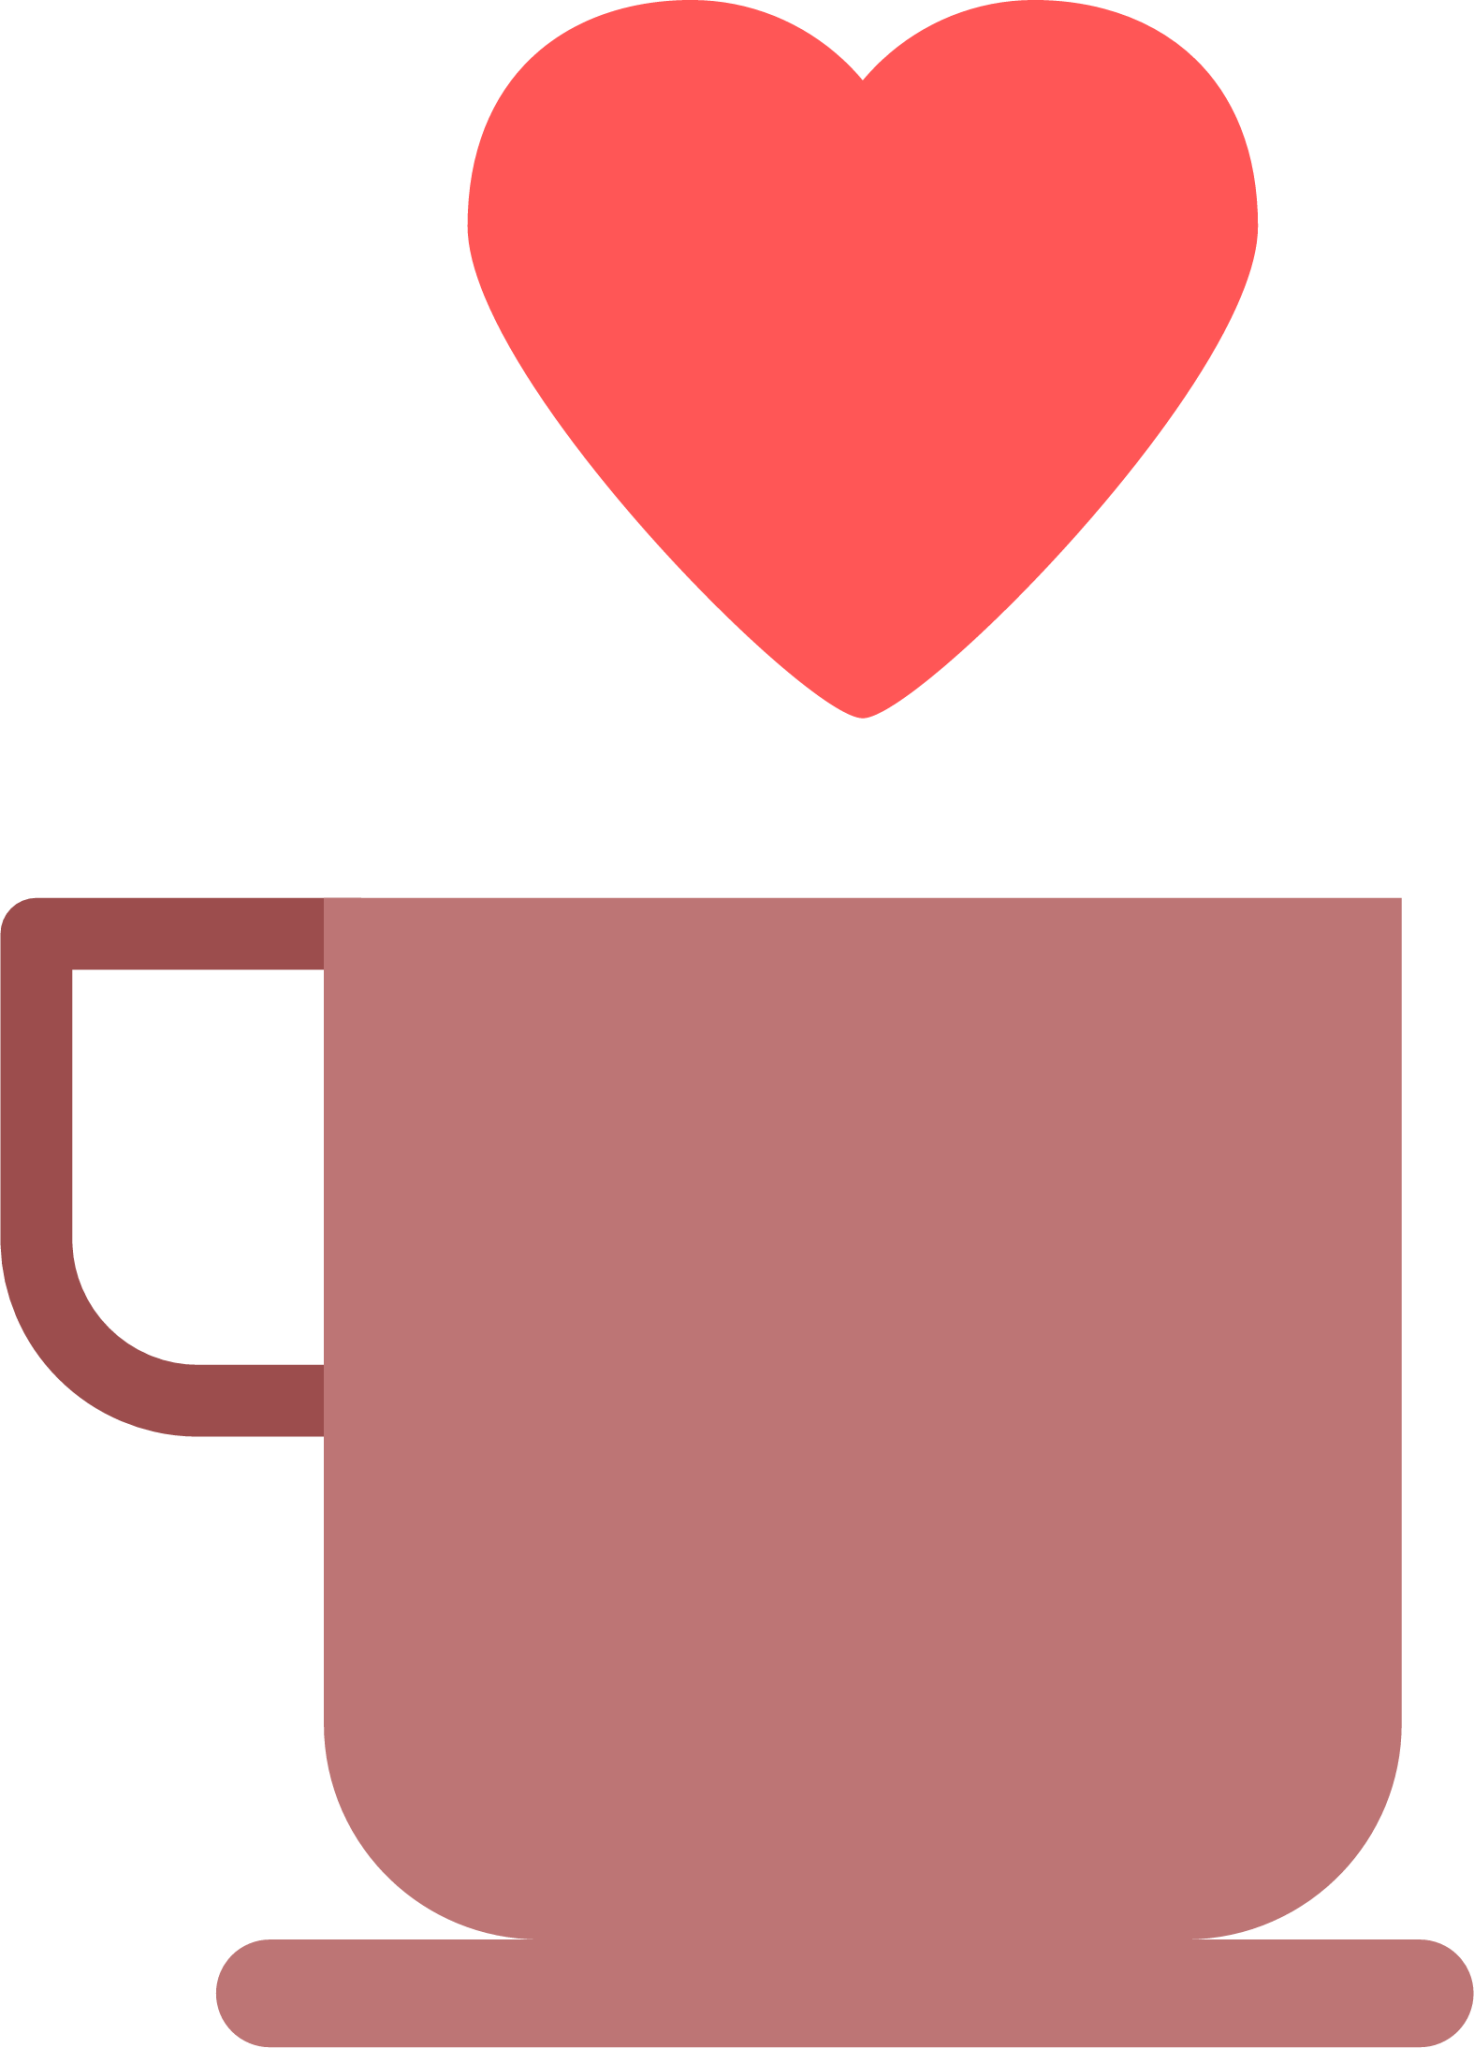 cup love tea coffee icon